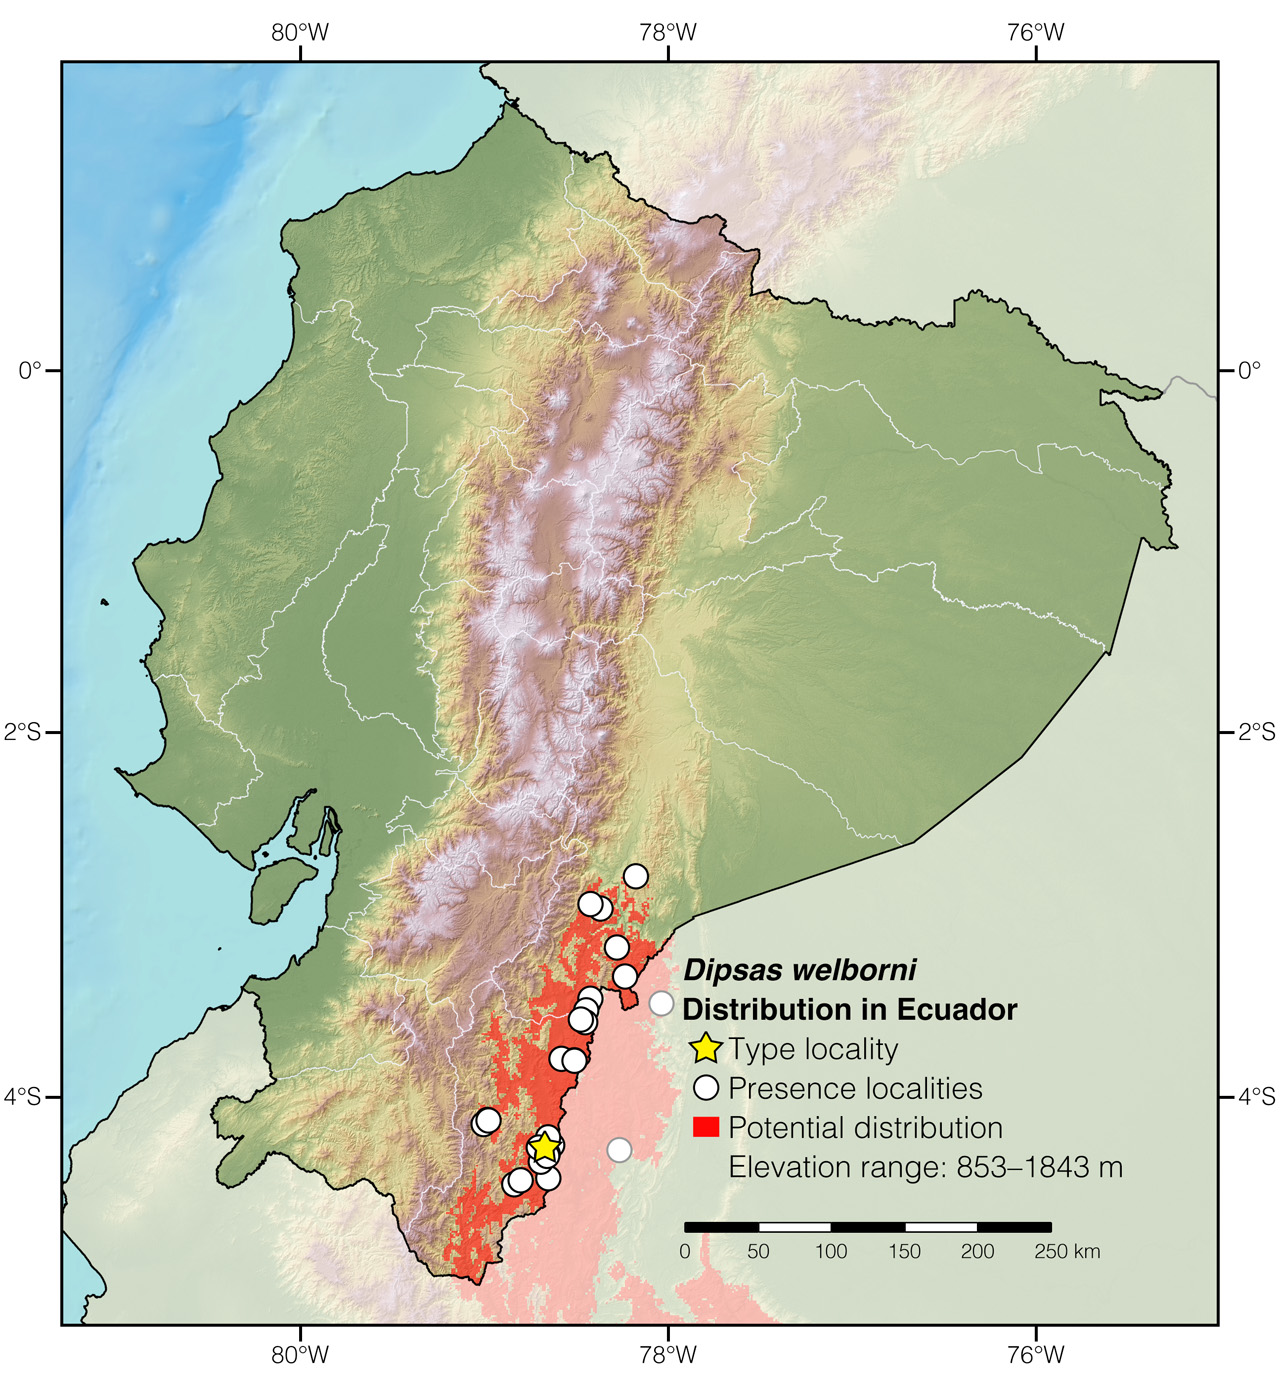 Distribution of Dipsas welborni in Ecuador